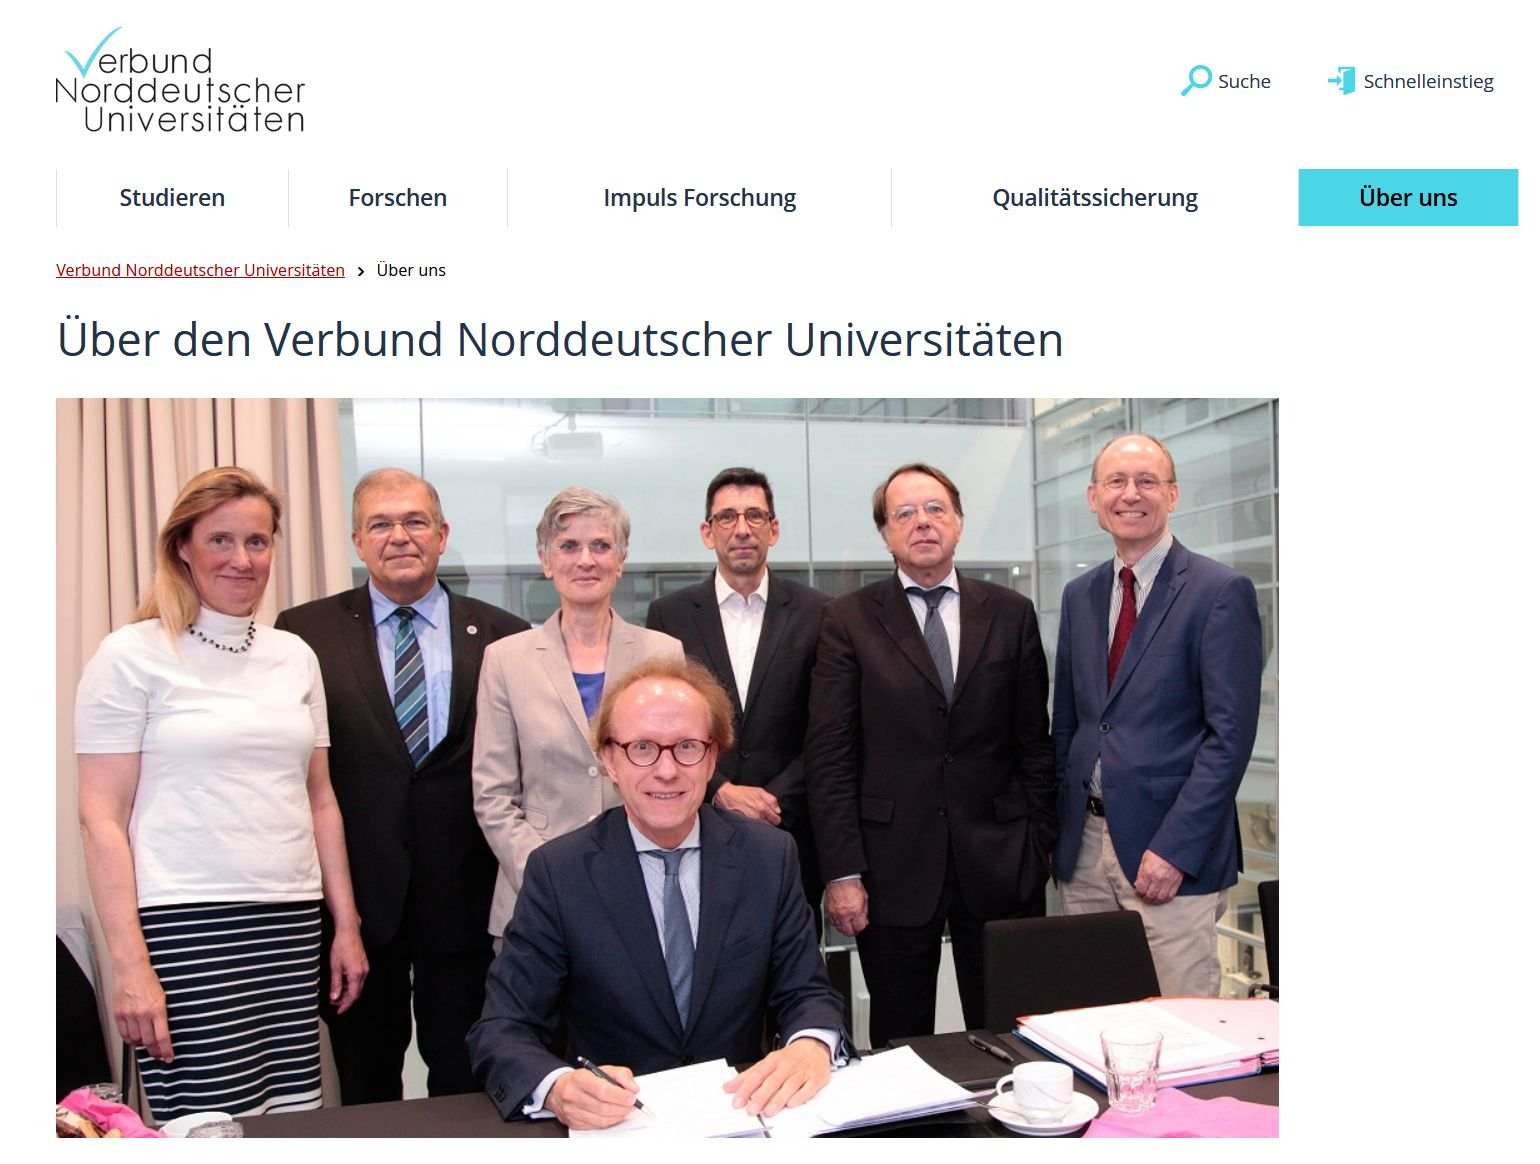 Abbildung von der Webseite des Verbundes mit den Vertreterinnen und Vertretern der beteiligten Hochschulen. Die Universität Bremen wird durch Konrektor Thomas Hoffmeister vertreten.